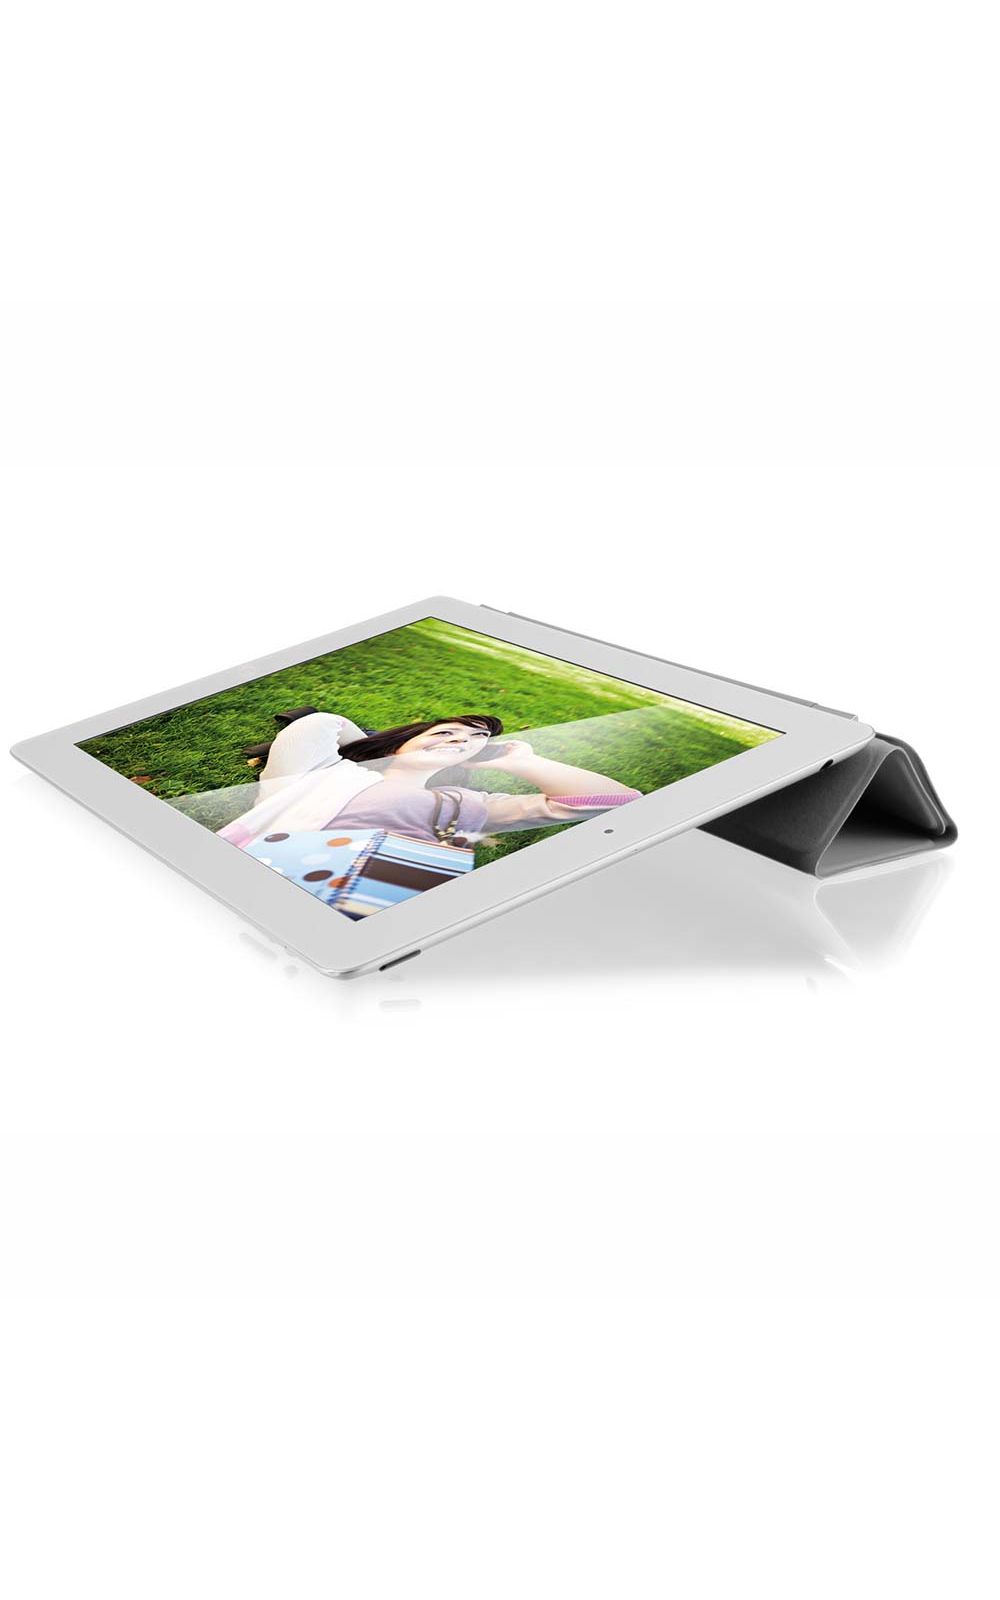 Foto 3 - Capa e Suporte para iOS Smart Cover Magnética Branco Multilaser - BO162